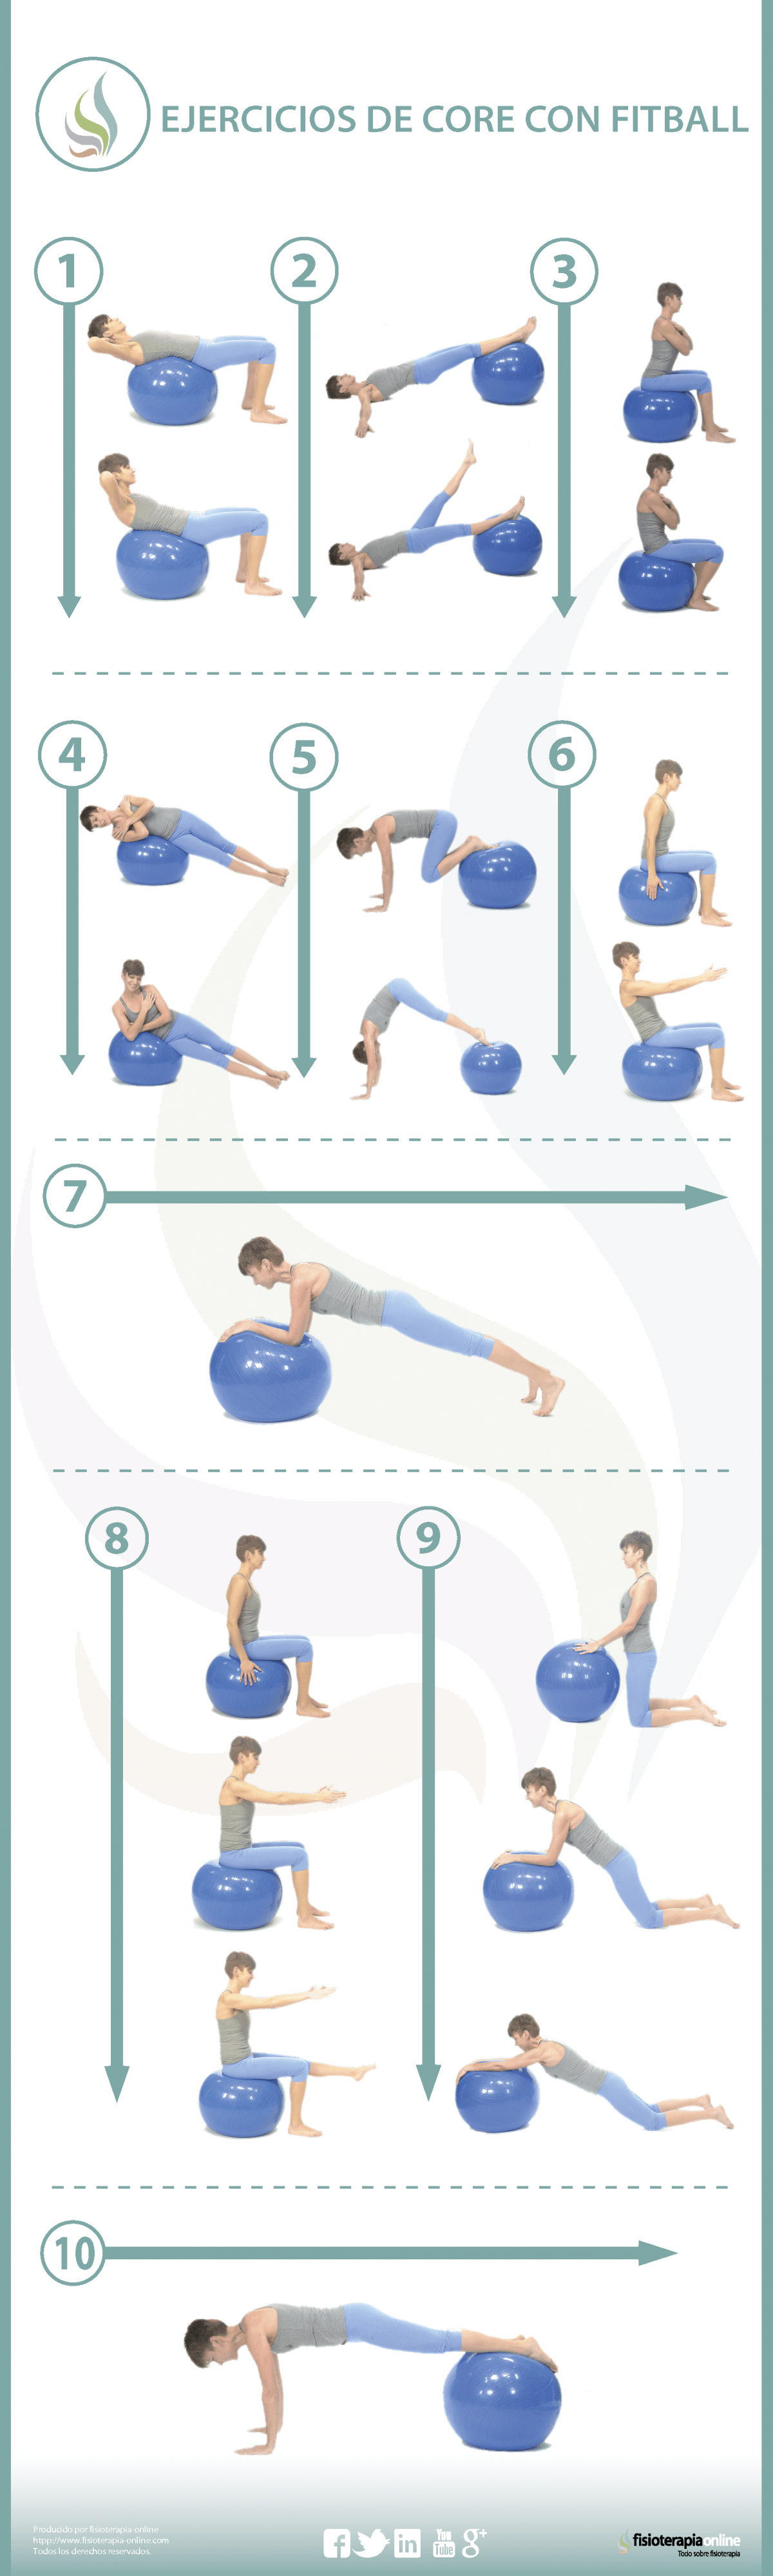 10 ejercicios para trabajar tu core con fitball